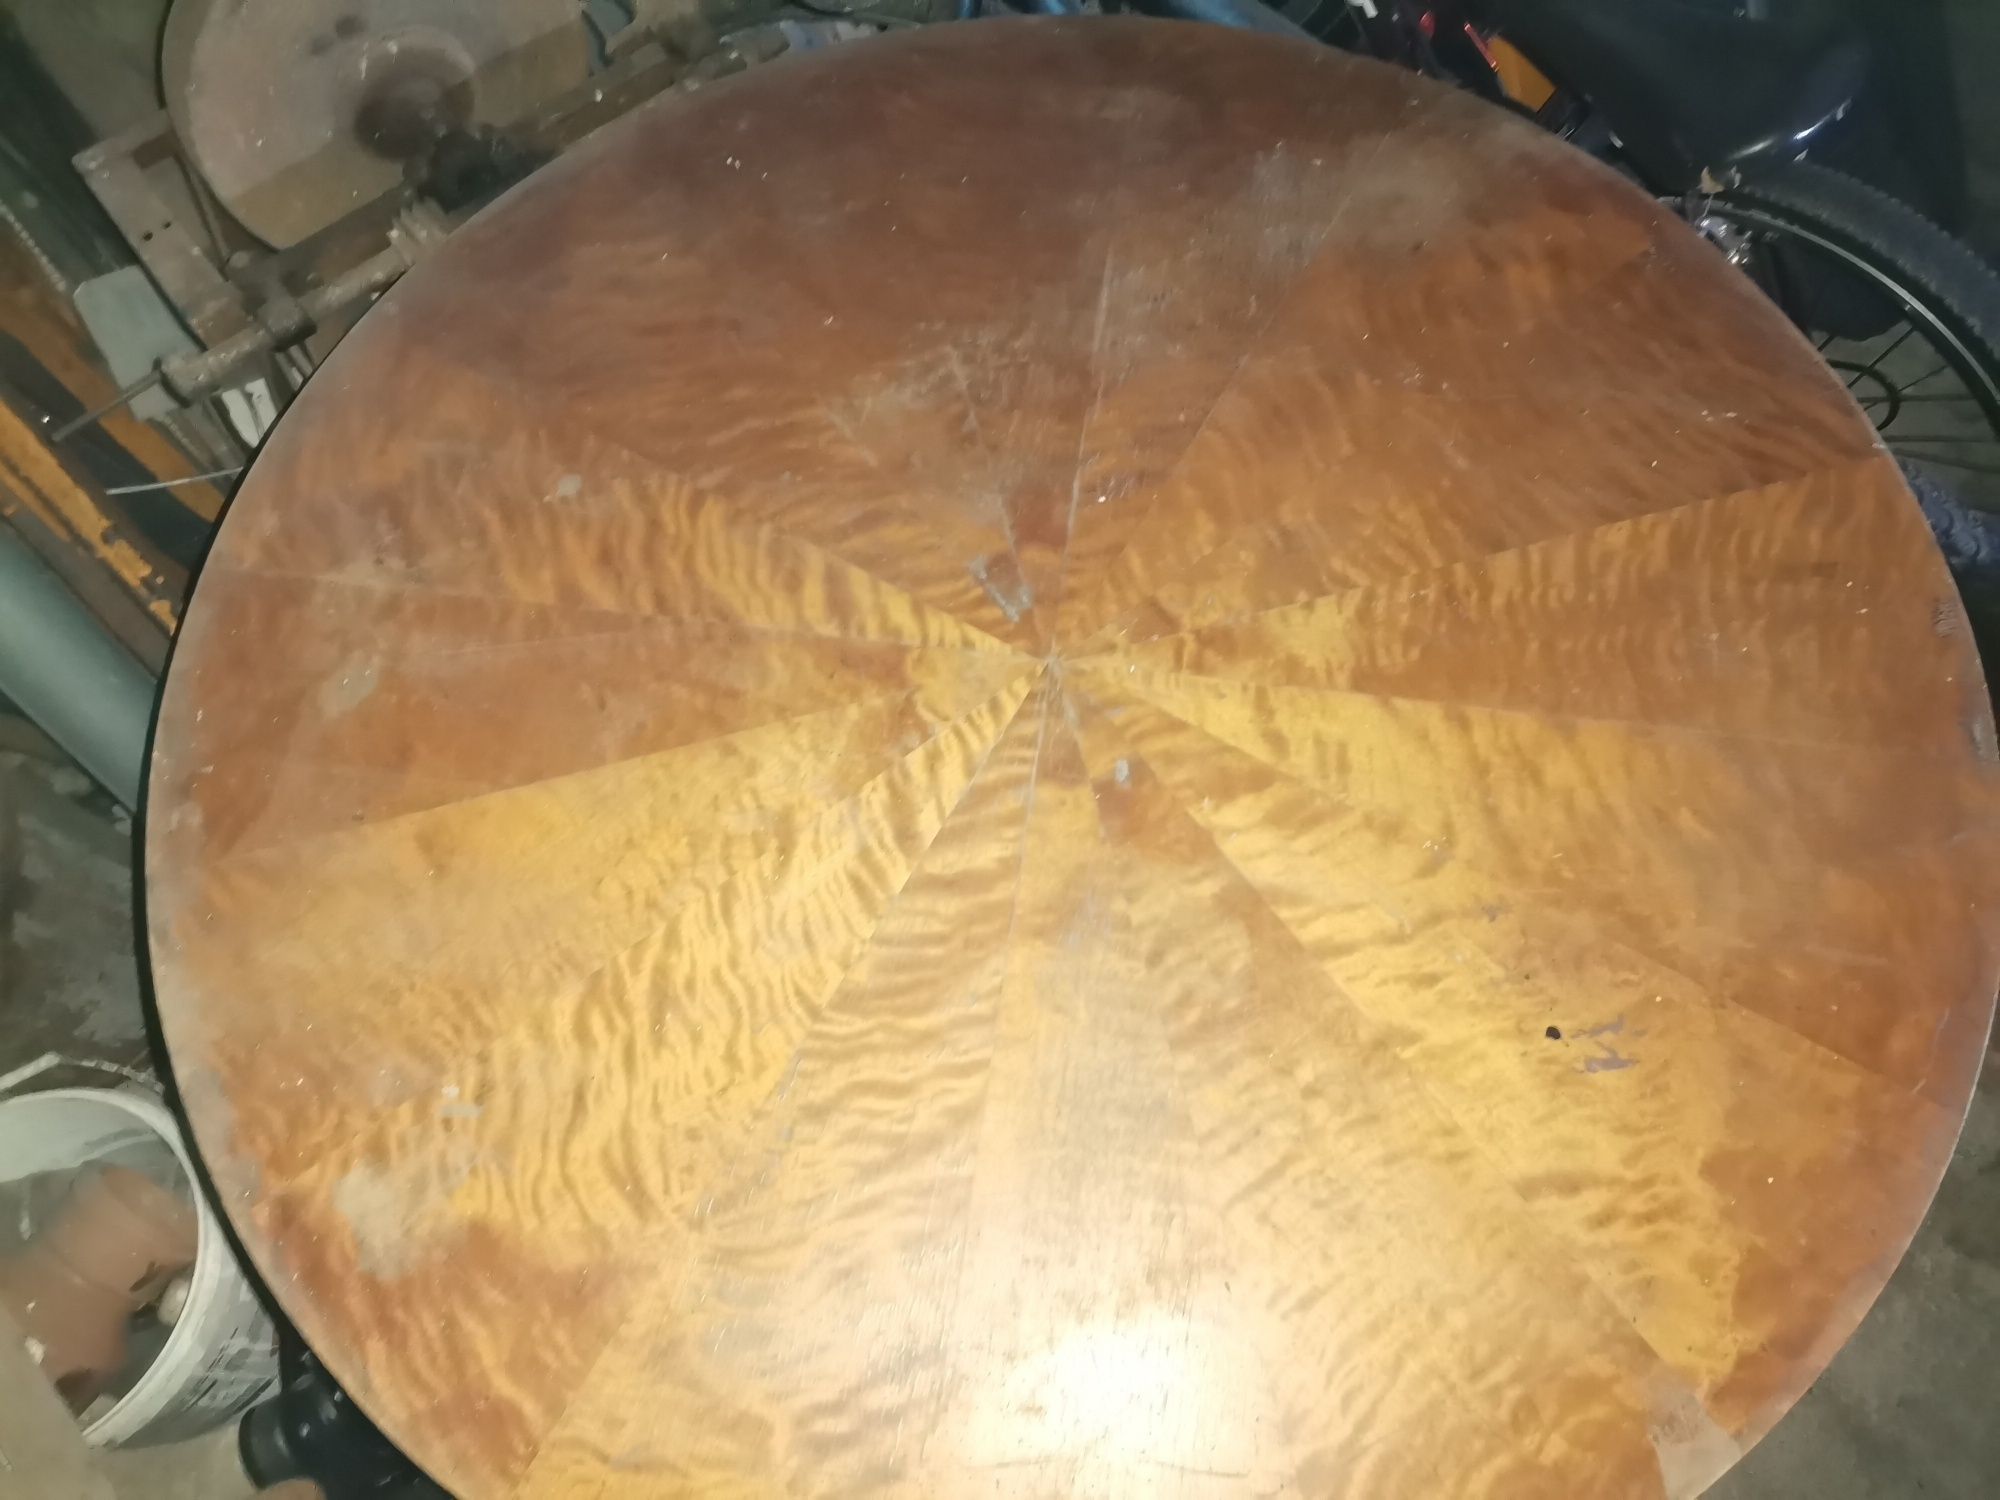 Stary stół do renowacji